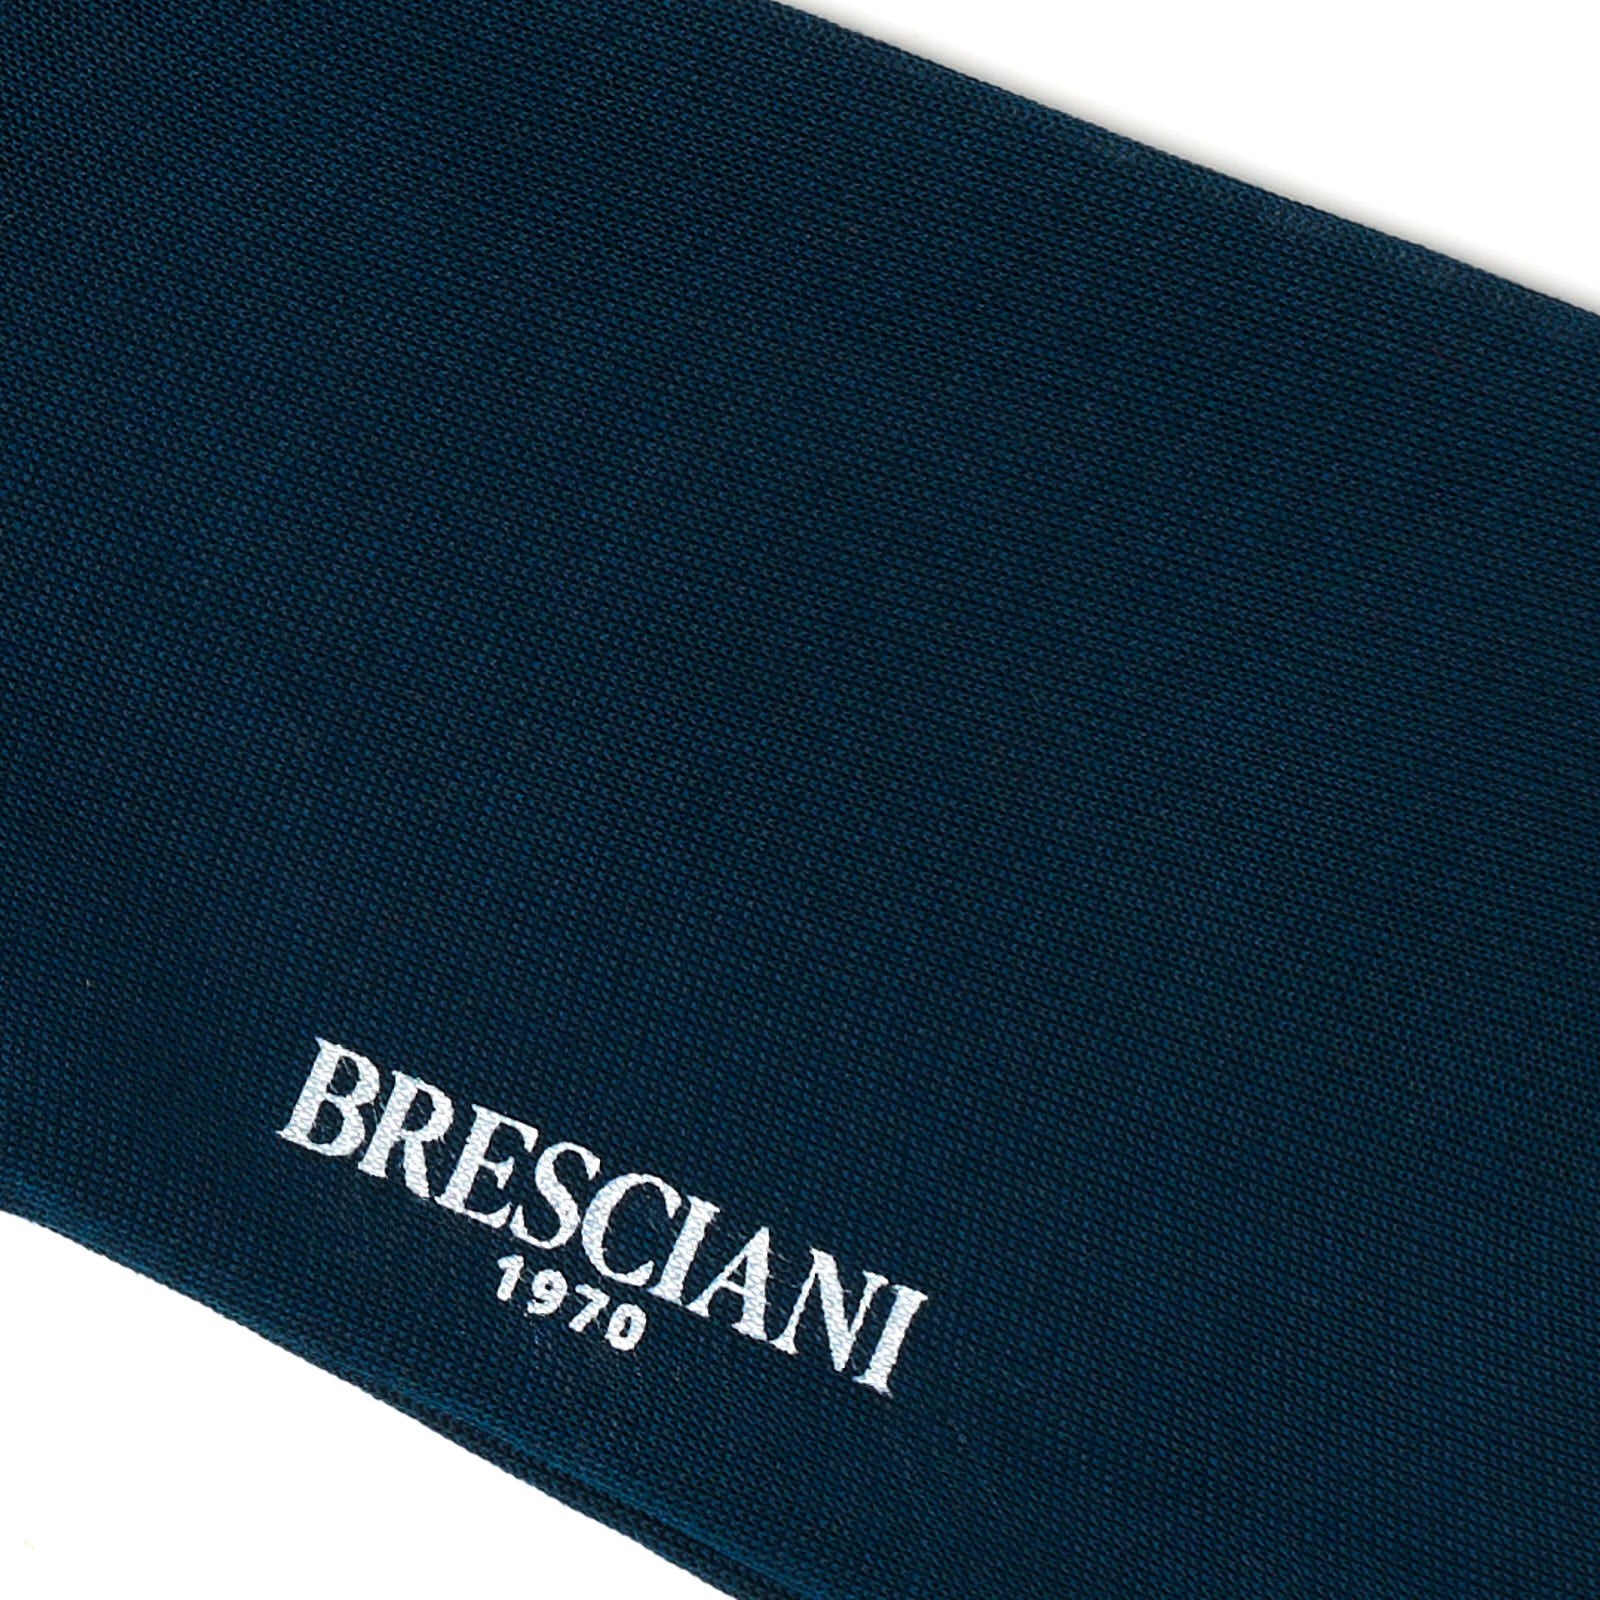 BRESCIANI "Lorenzo" Cotton Mid Calf Length Socks M-L BRESCIANI